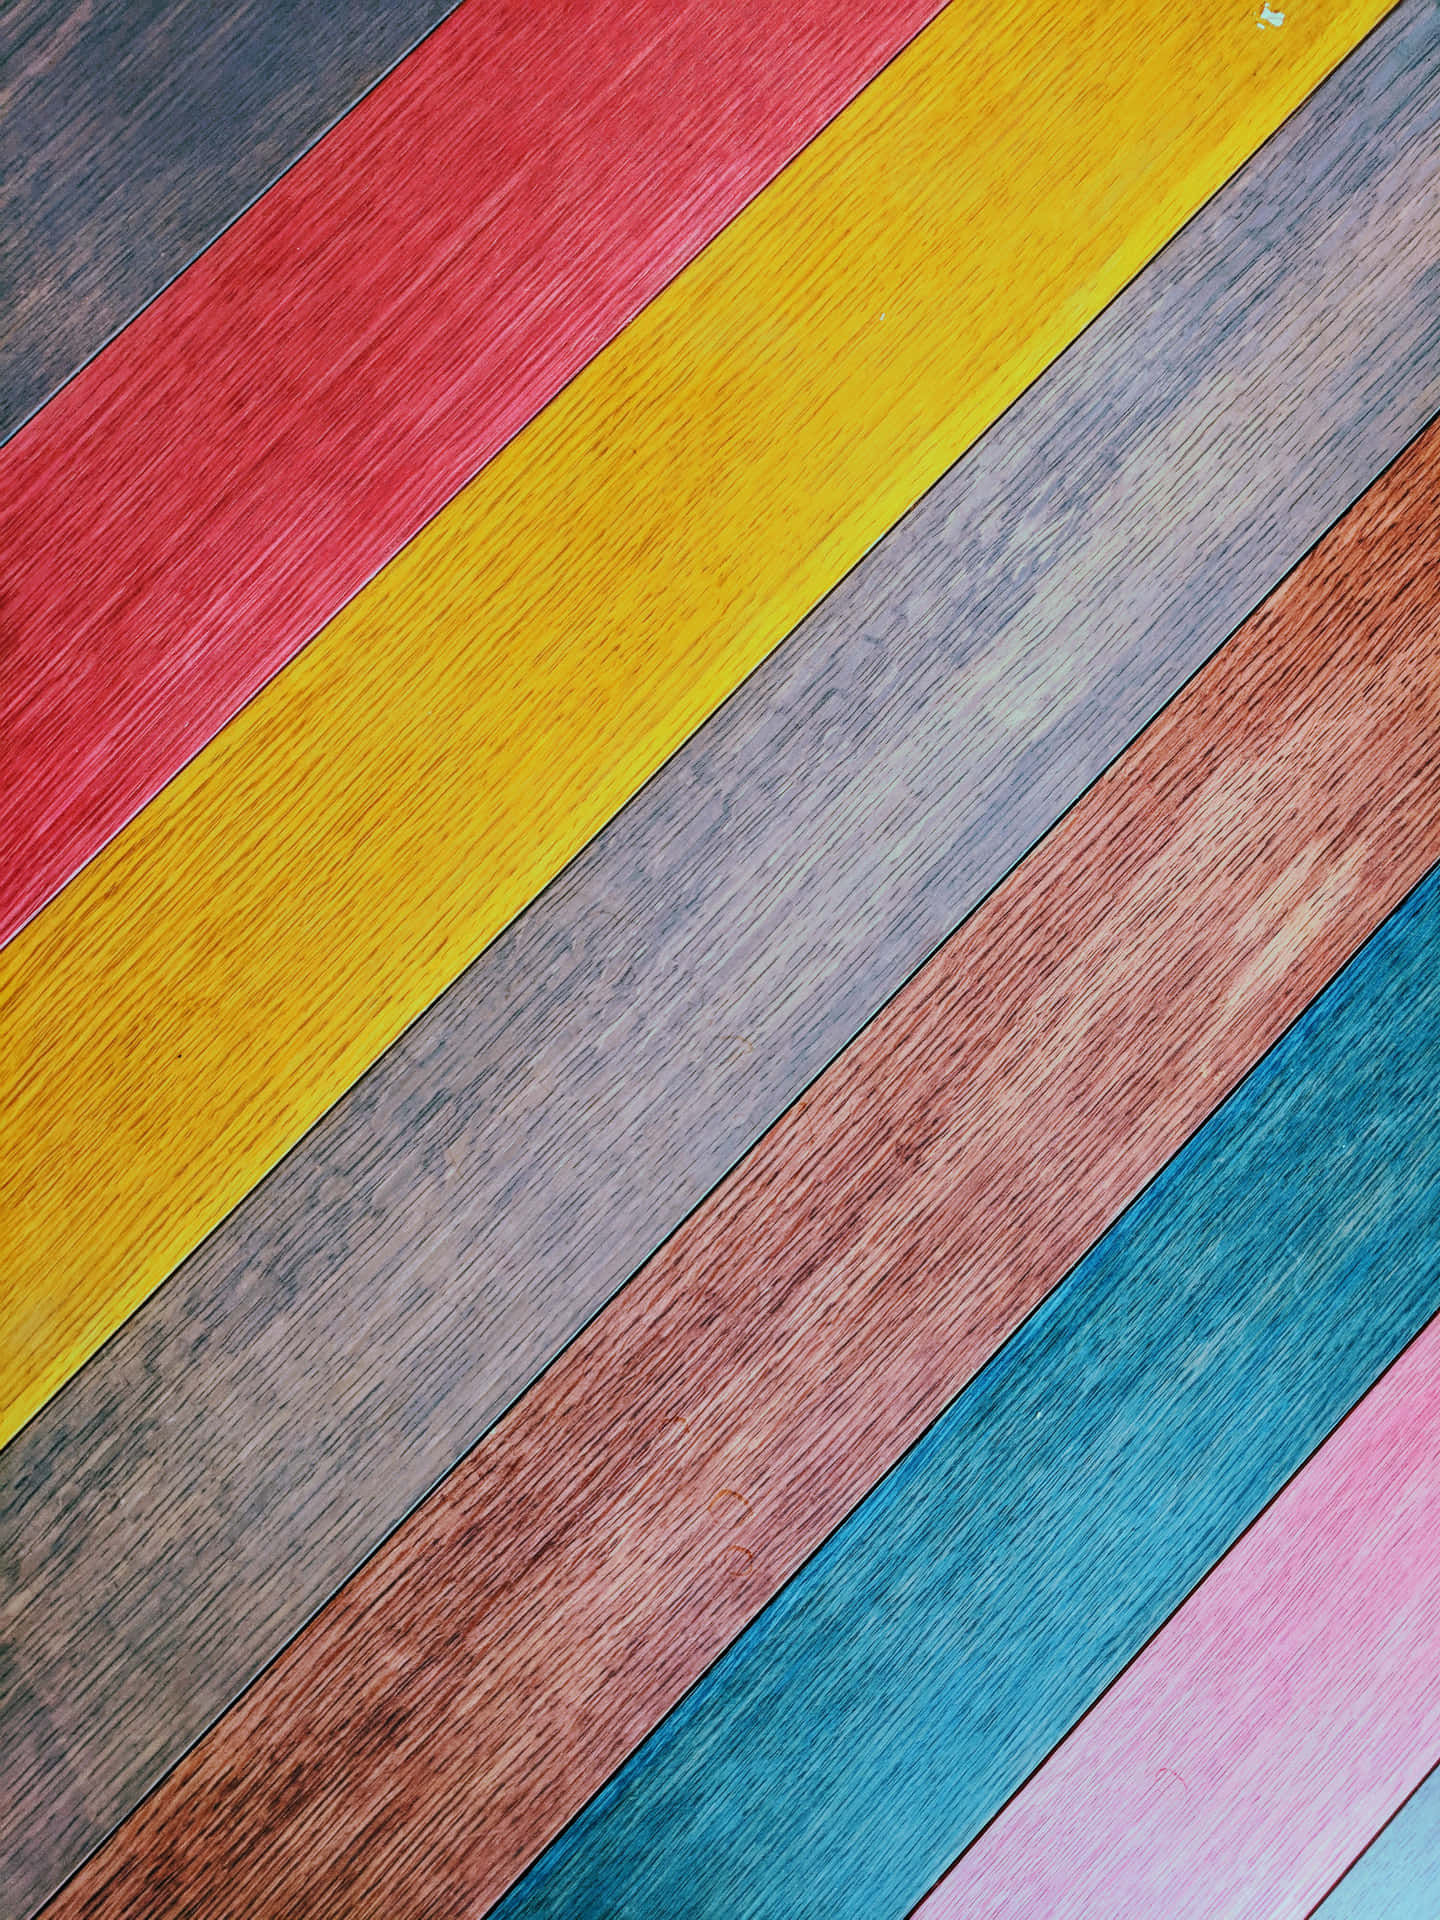 En træbænk med et farverigt mønster